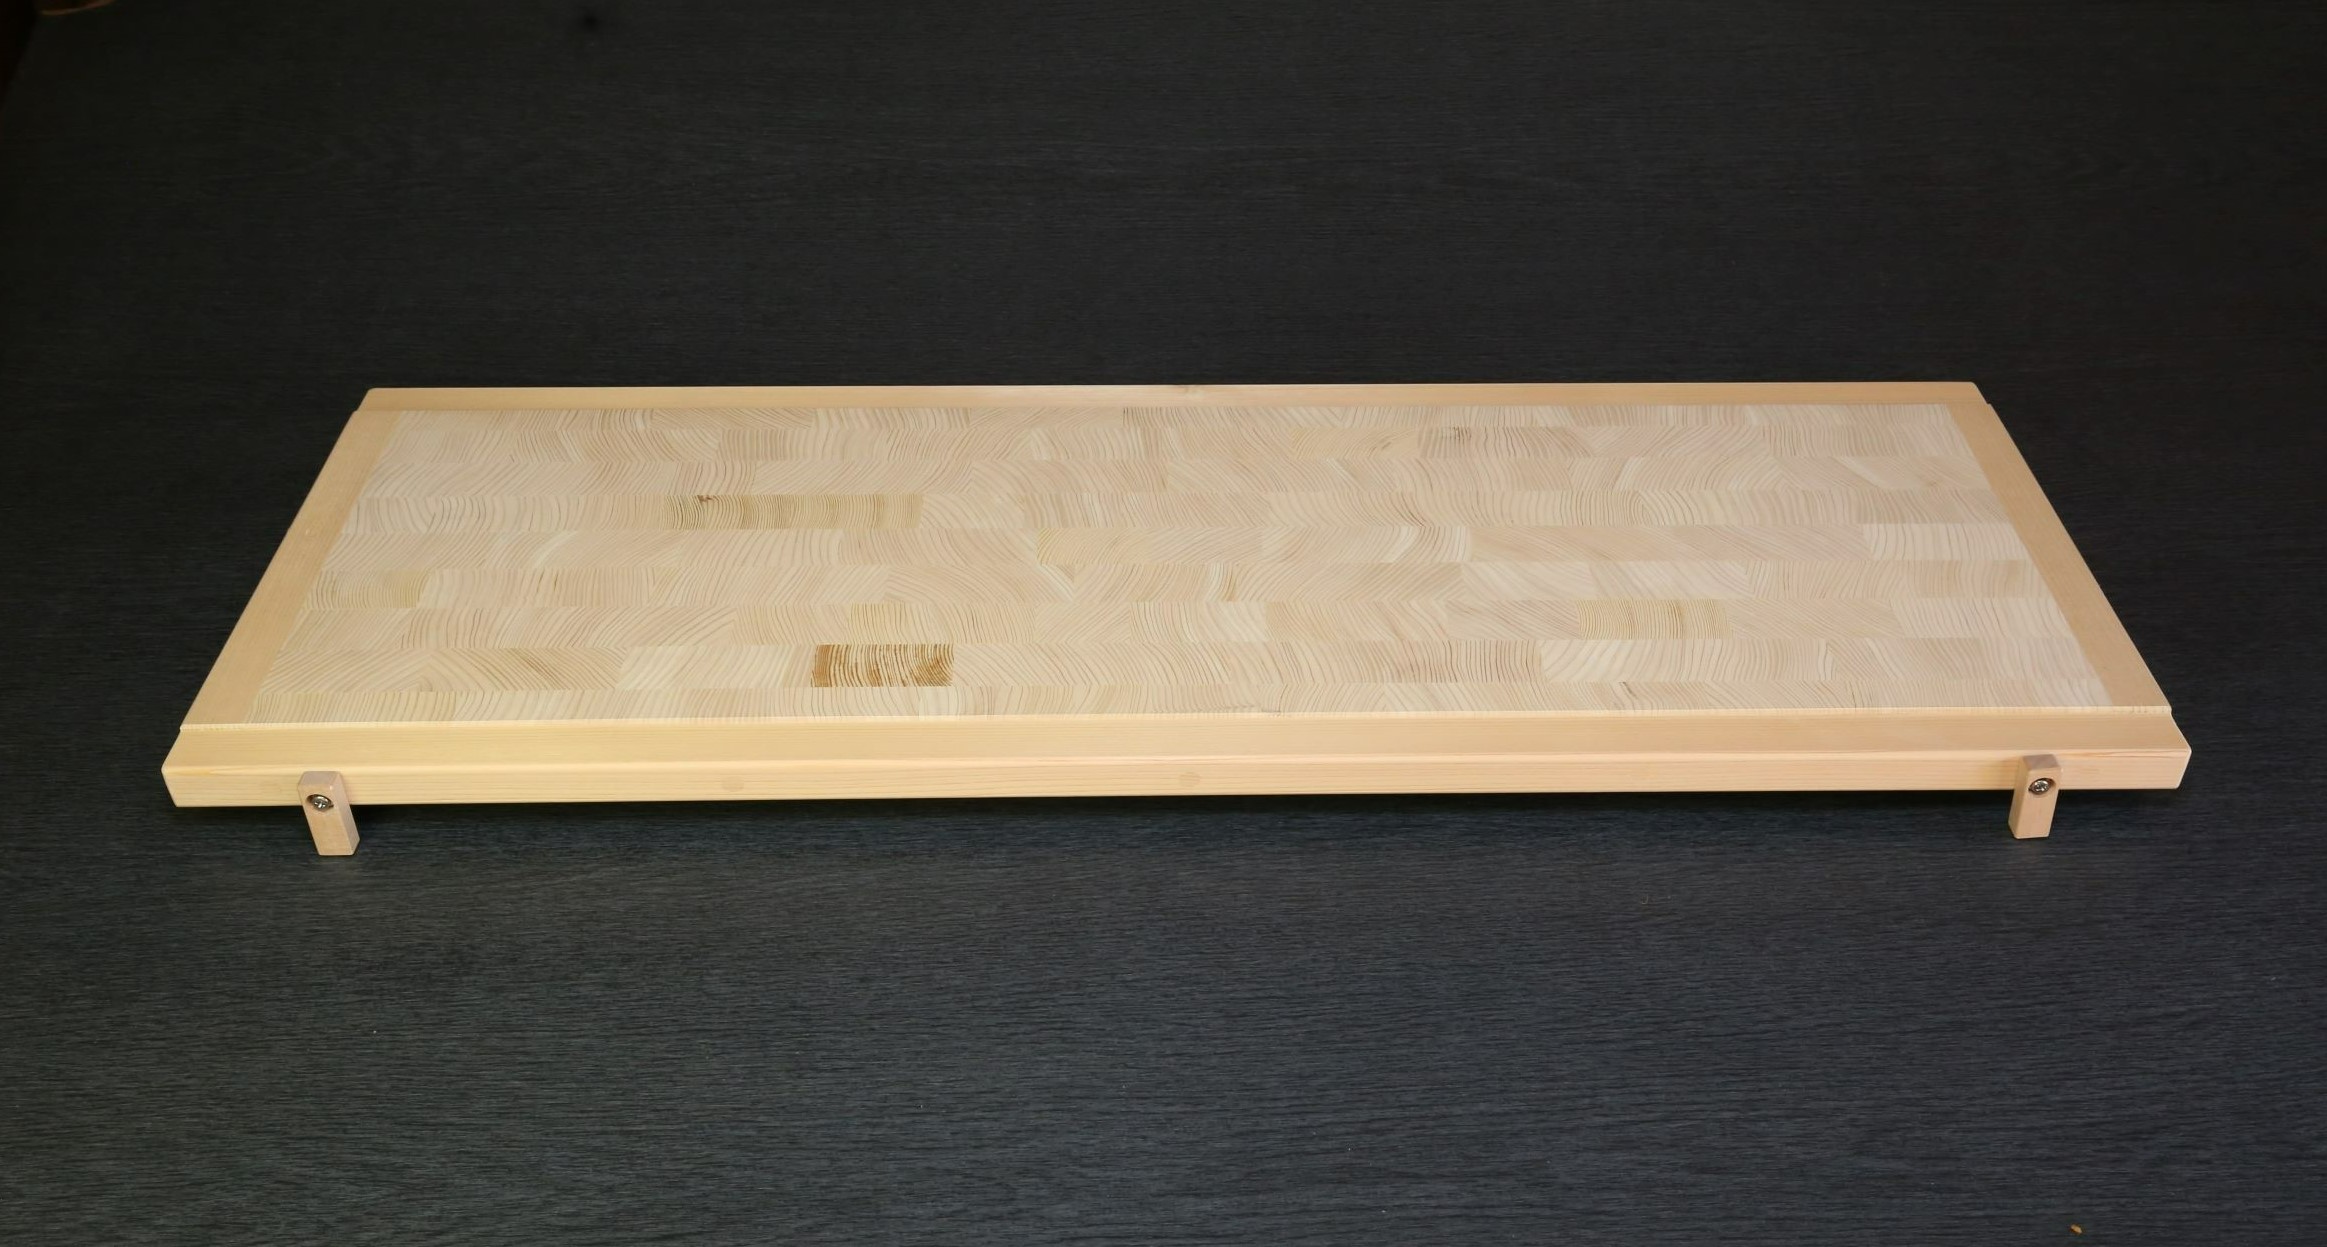 木曽椹(さわら)の角材を小口切りにして、その切り口を合わせた寄せ木づくりのまな板。長く使用しても減りが少なく、弾力性があります。 蕎麦切り面が100㎝×36㎝の少し大きめなサイズでプロ仕様の広さです。